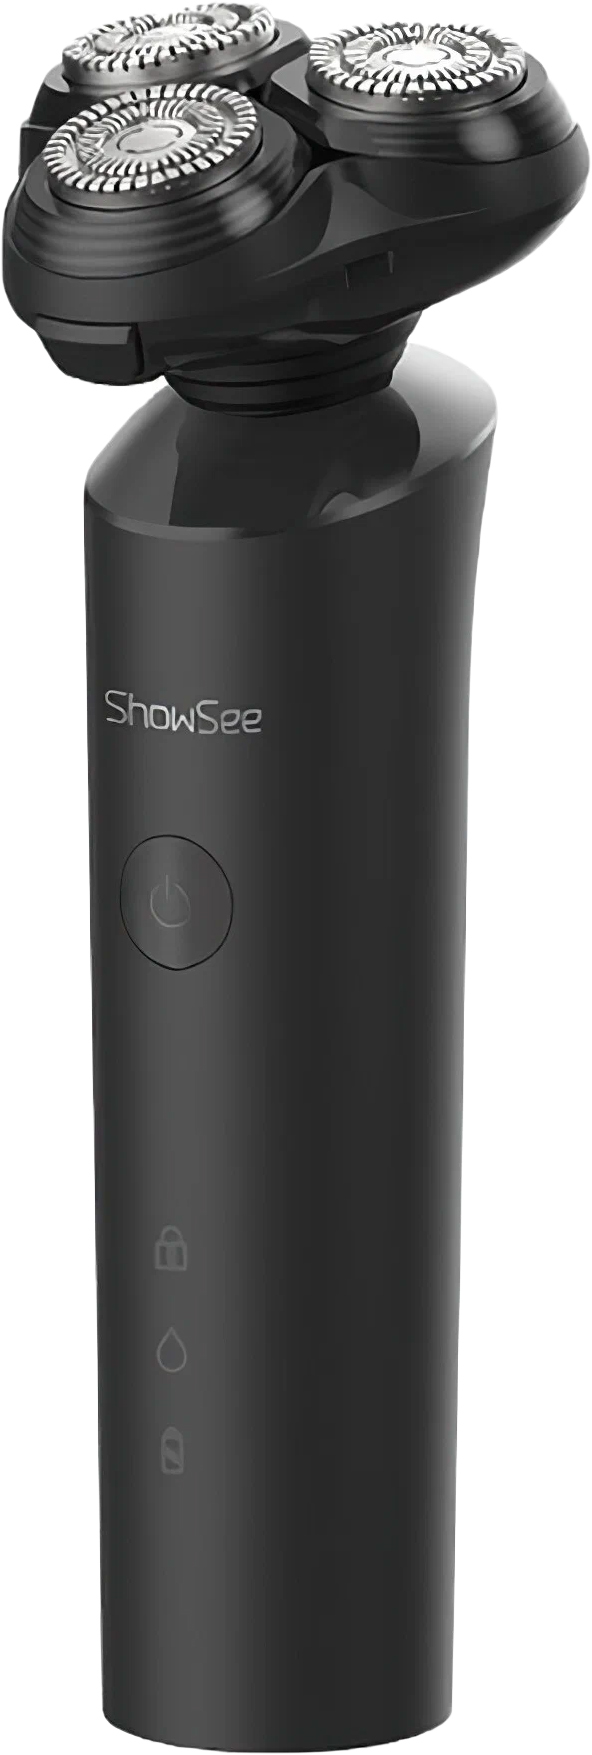 Электробритва Xiaomi ShowSee Electric Shaver F1-R электробритва xiaomi showsee electric shaver f305 black